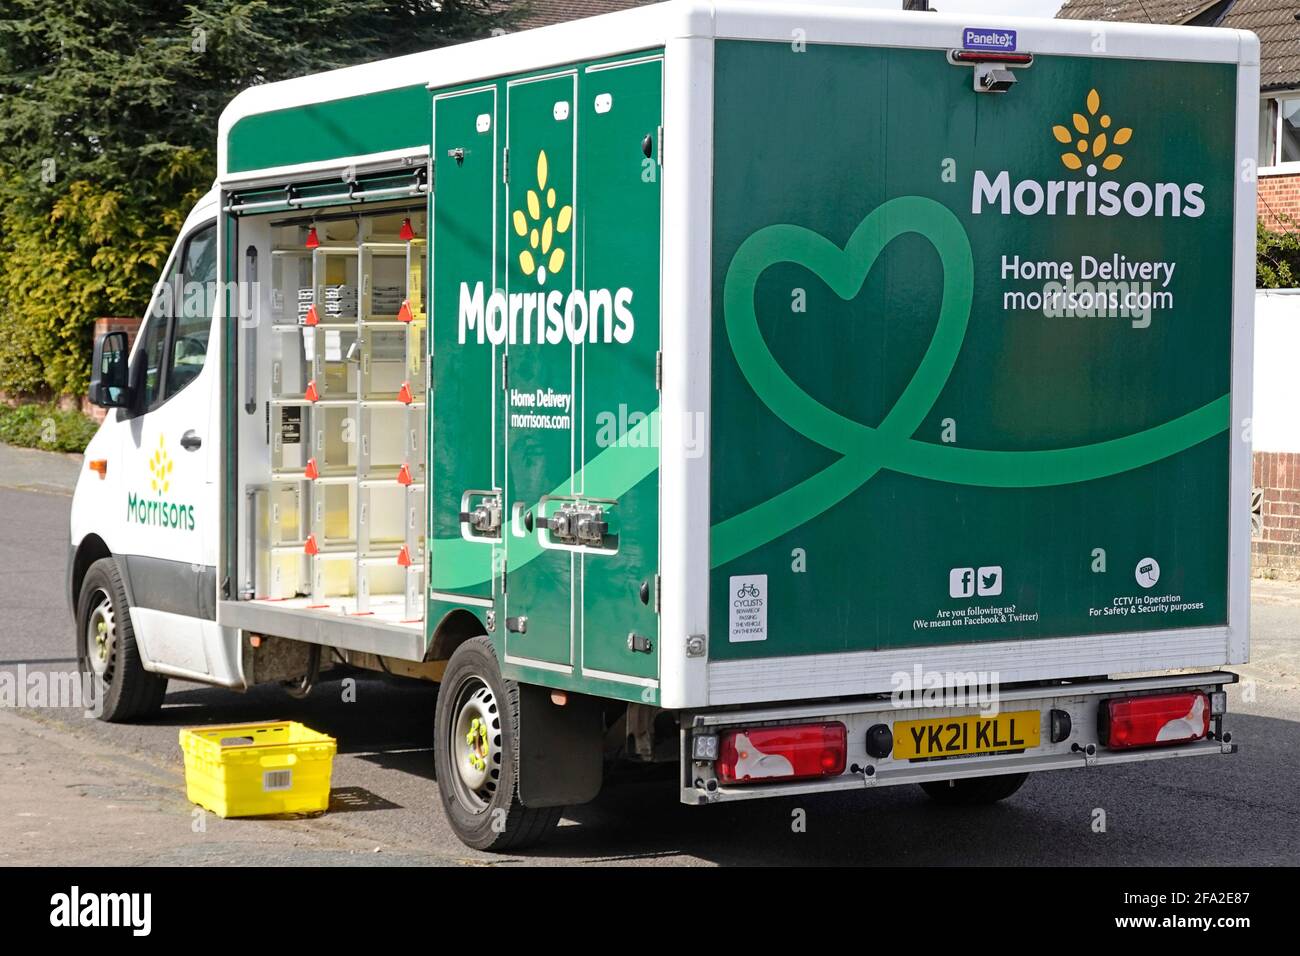 Nahaufnahme der offenen Seite des Morrisons Supermarkt Lebensmittelgeschäft van von Lebensmitteln Online-Shopping für die Lieferung nach Hause Geparkt am Haus England UK Stockfoto